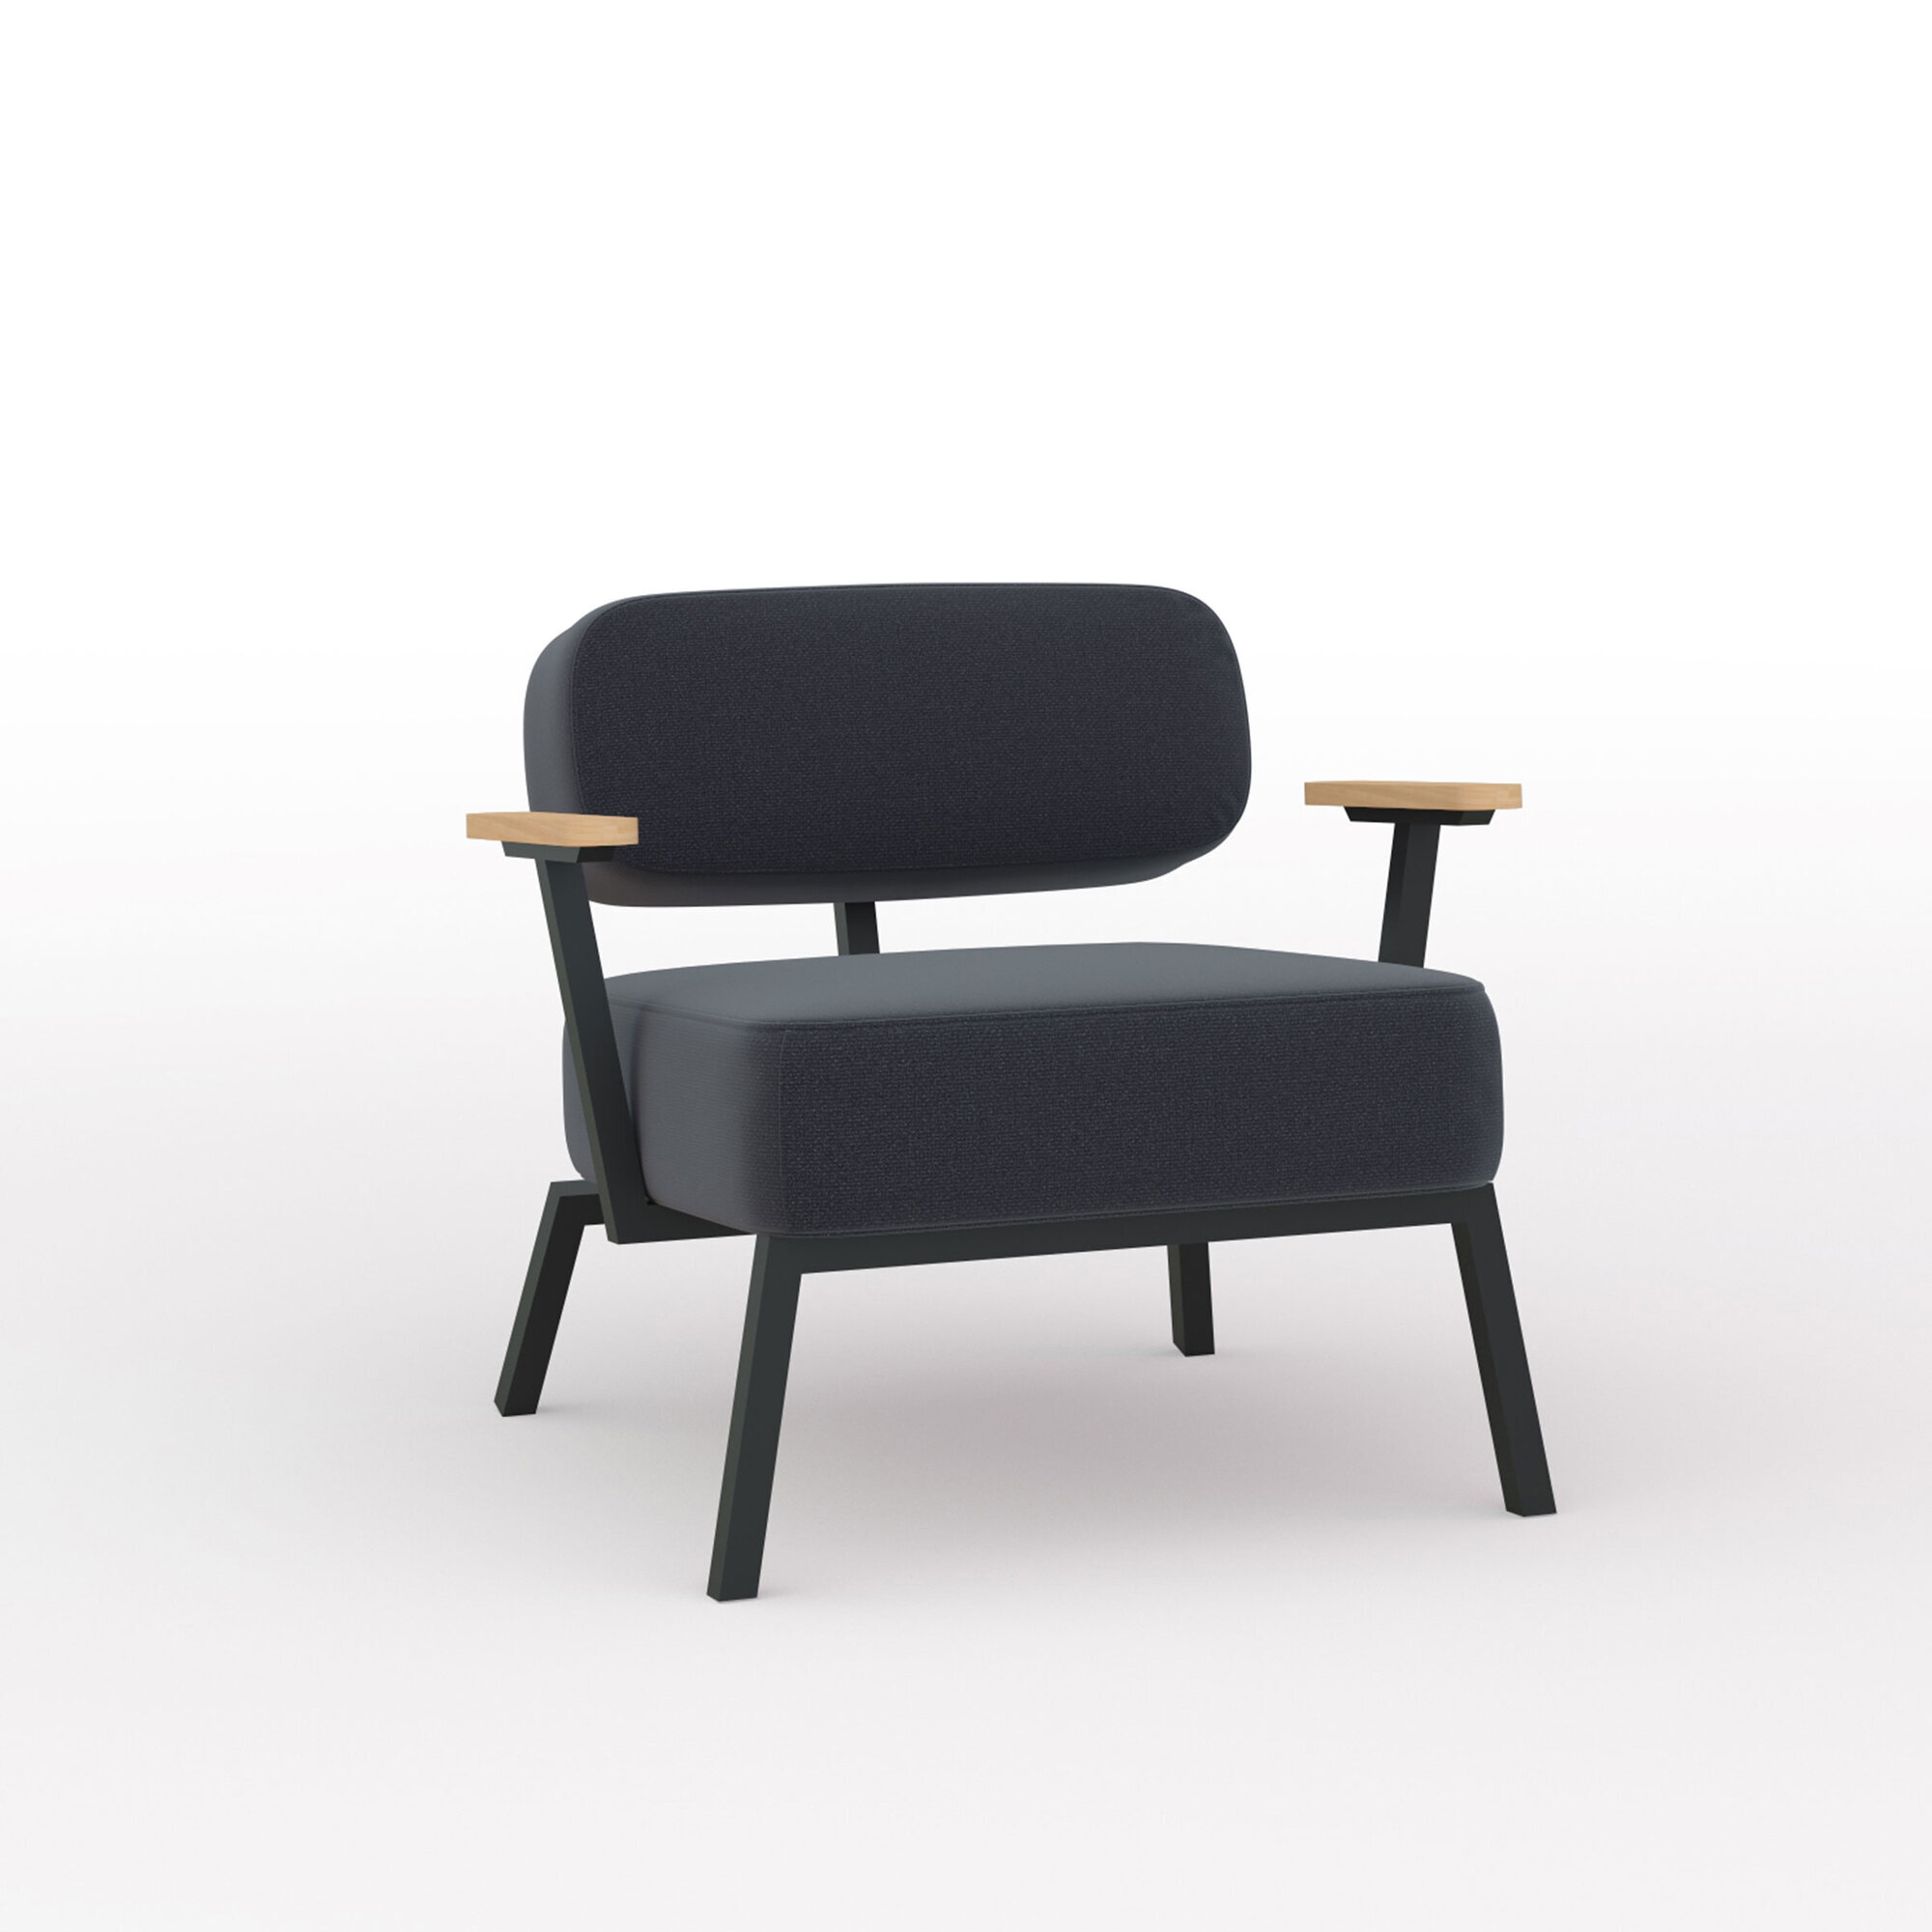 Design modern sofa | Ode lounge chair 1 seater with armrest  hallingdal65 190 | Studio HENK| Listing_image